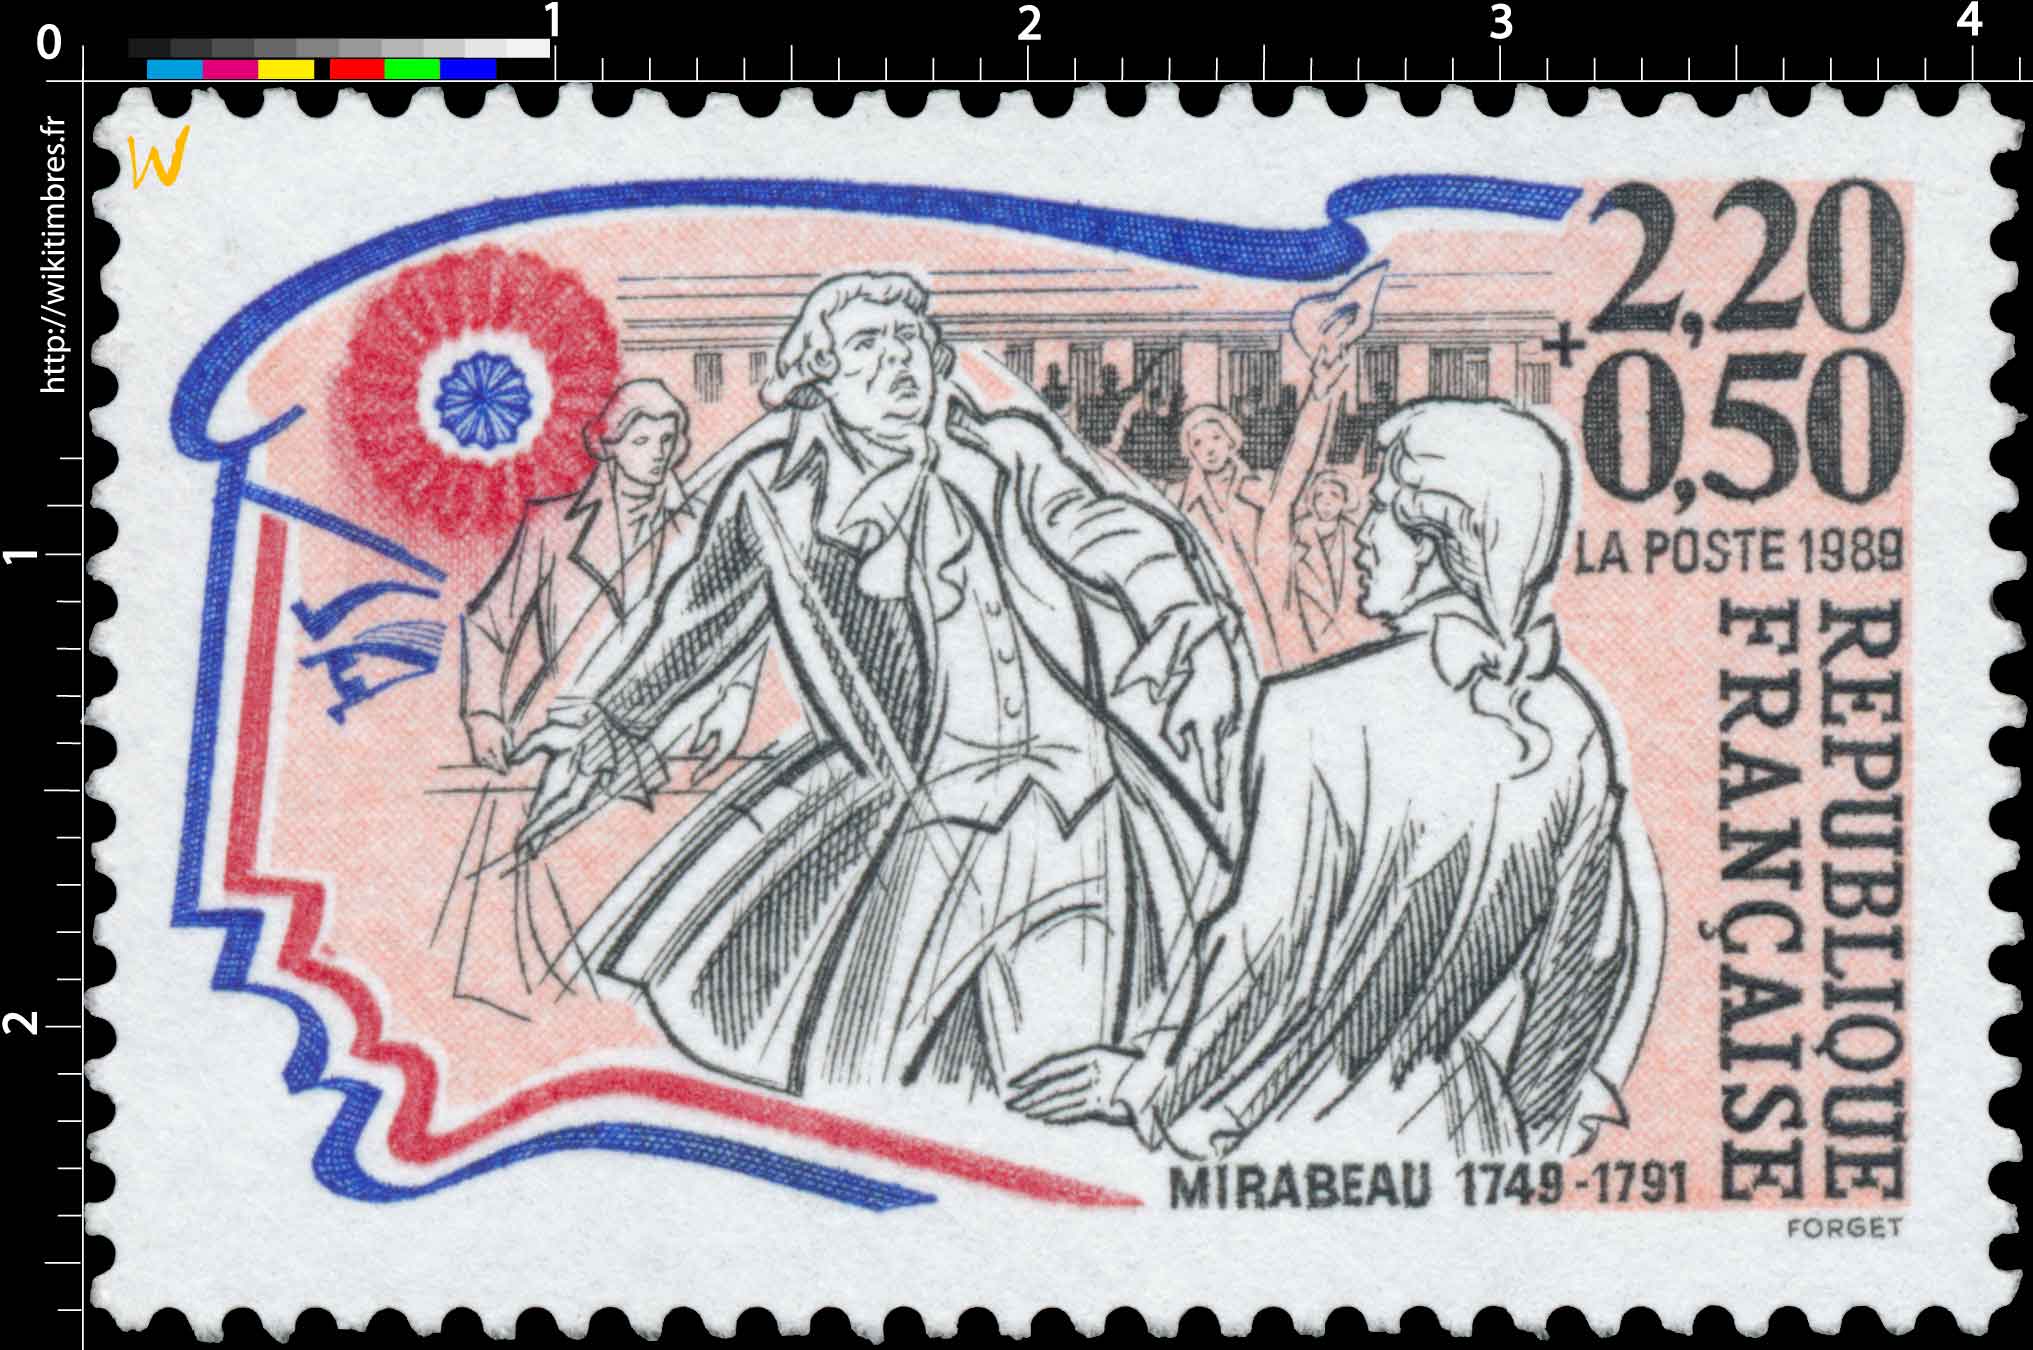 1989 MIRABEAU 1749-1791